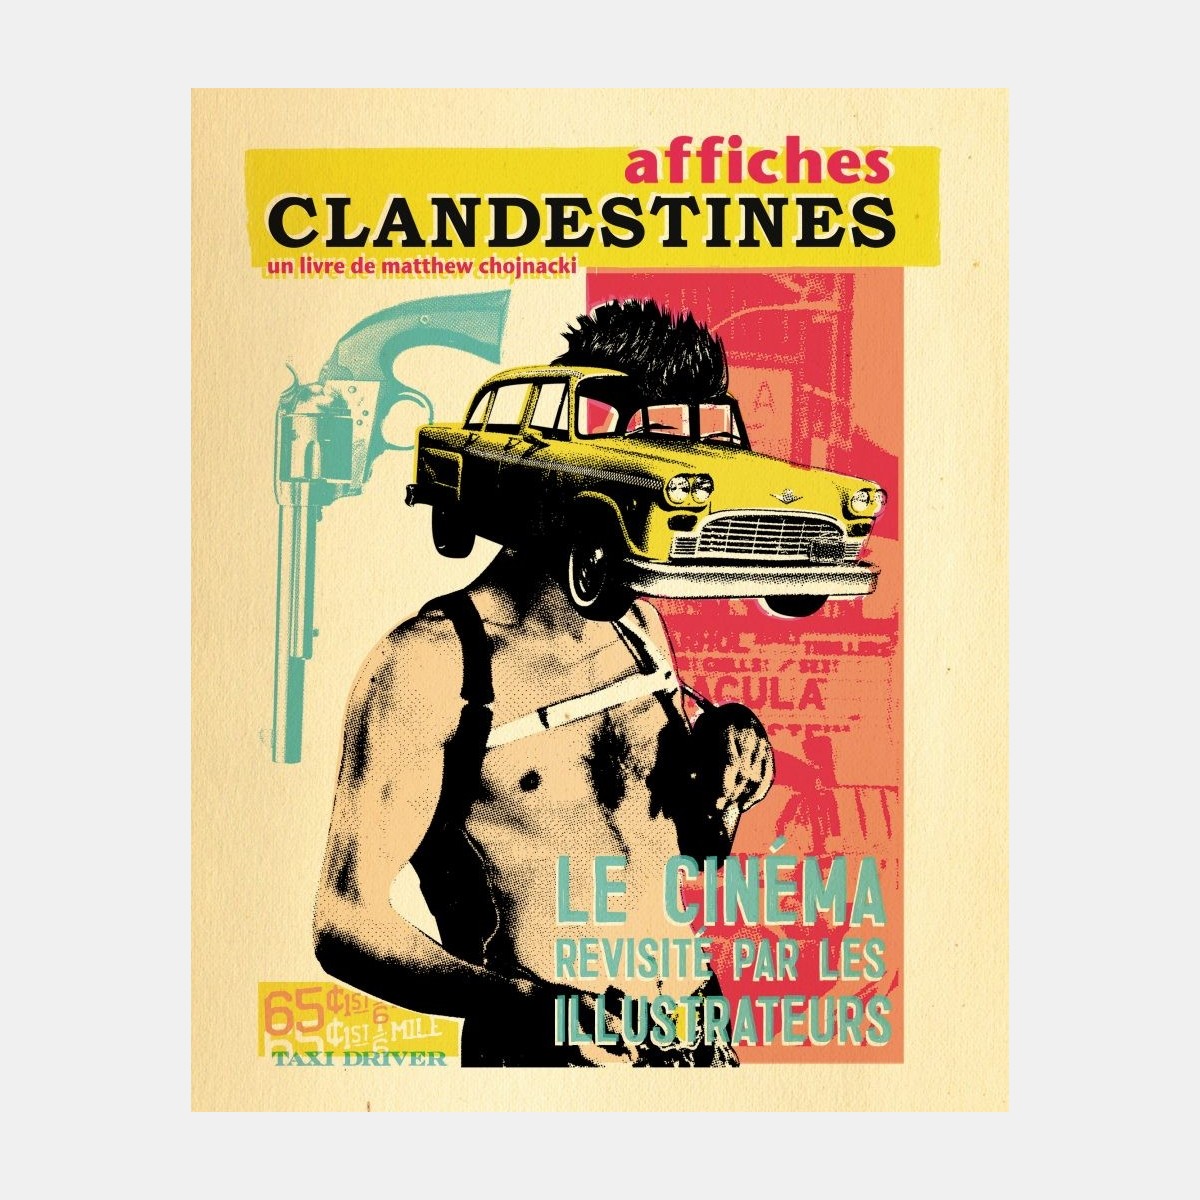 Affiches Clandestines